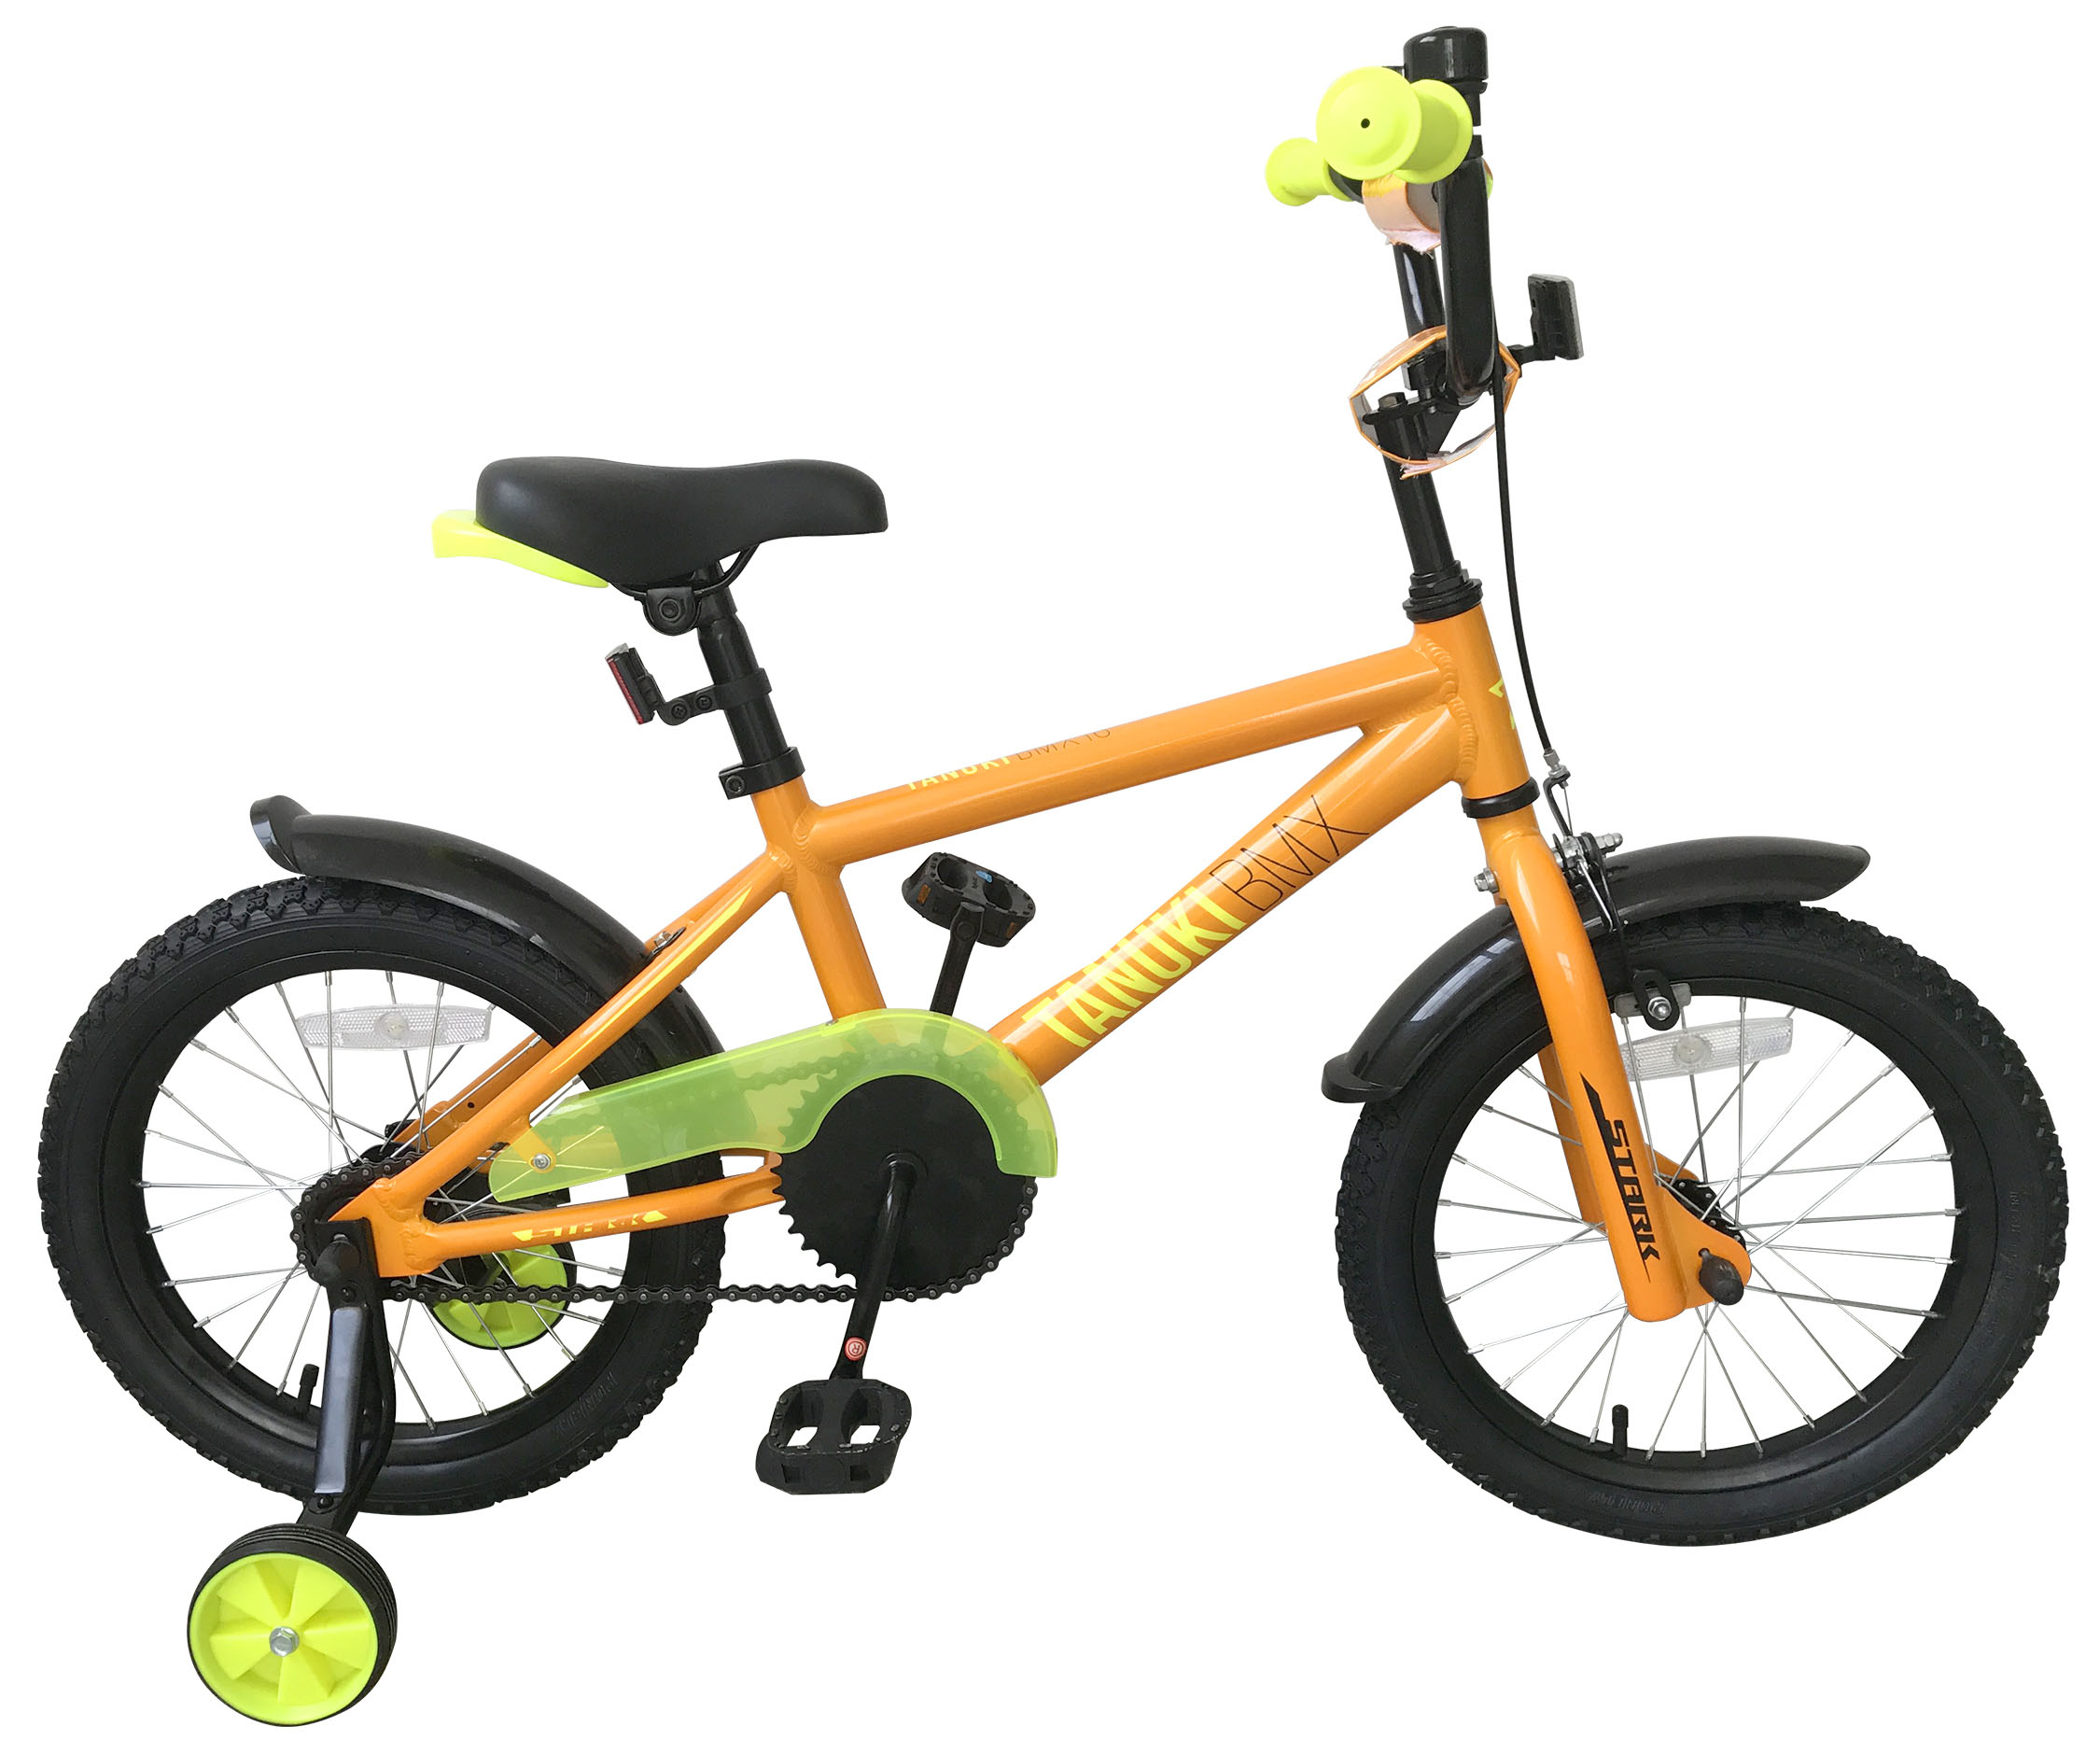  Отзывы о Детском велосипеде Stark Tanuki 16 BMX 2019